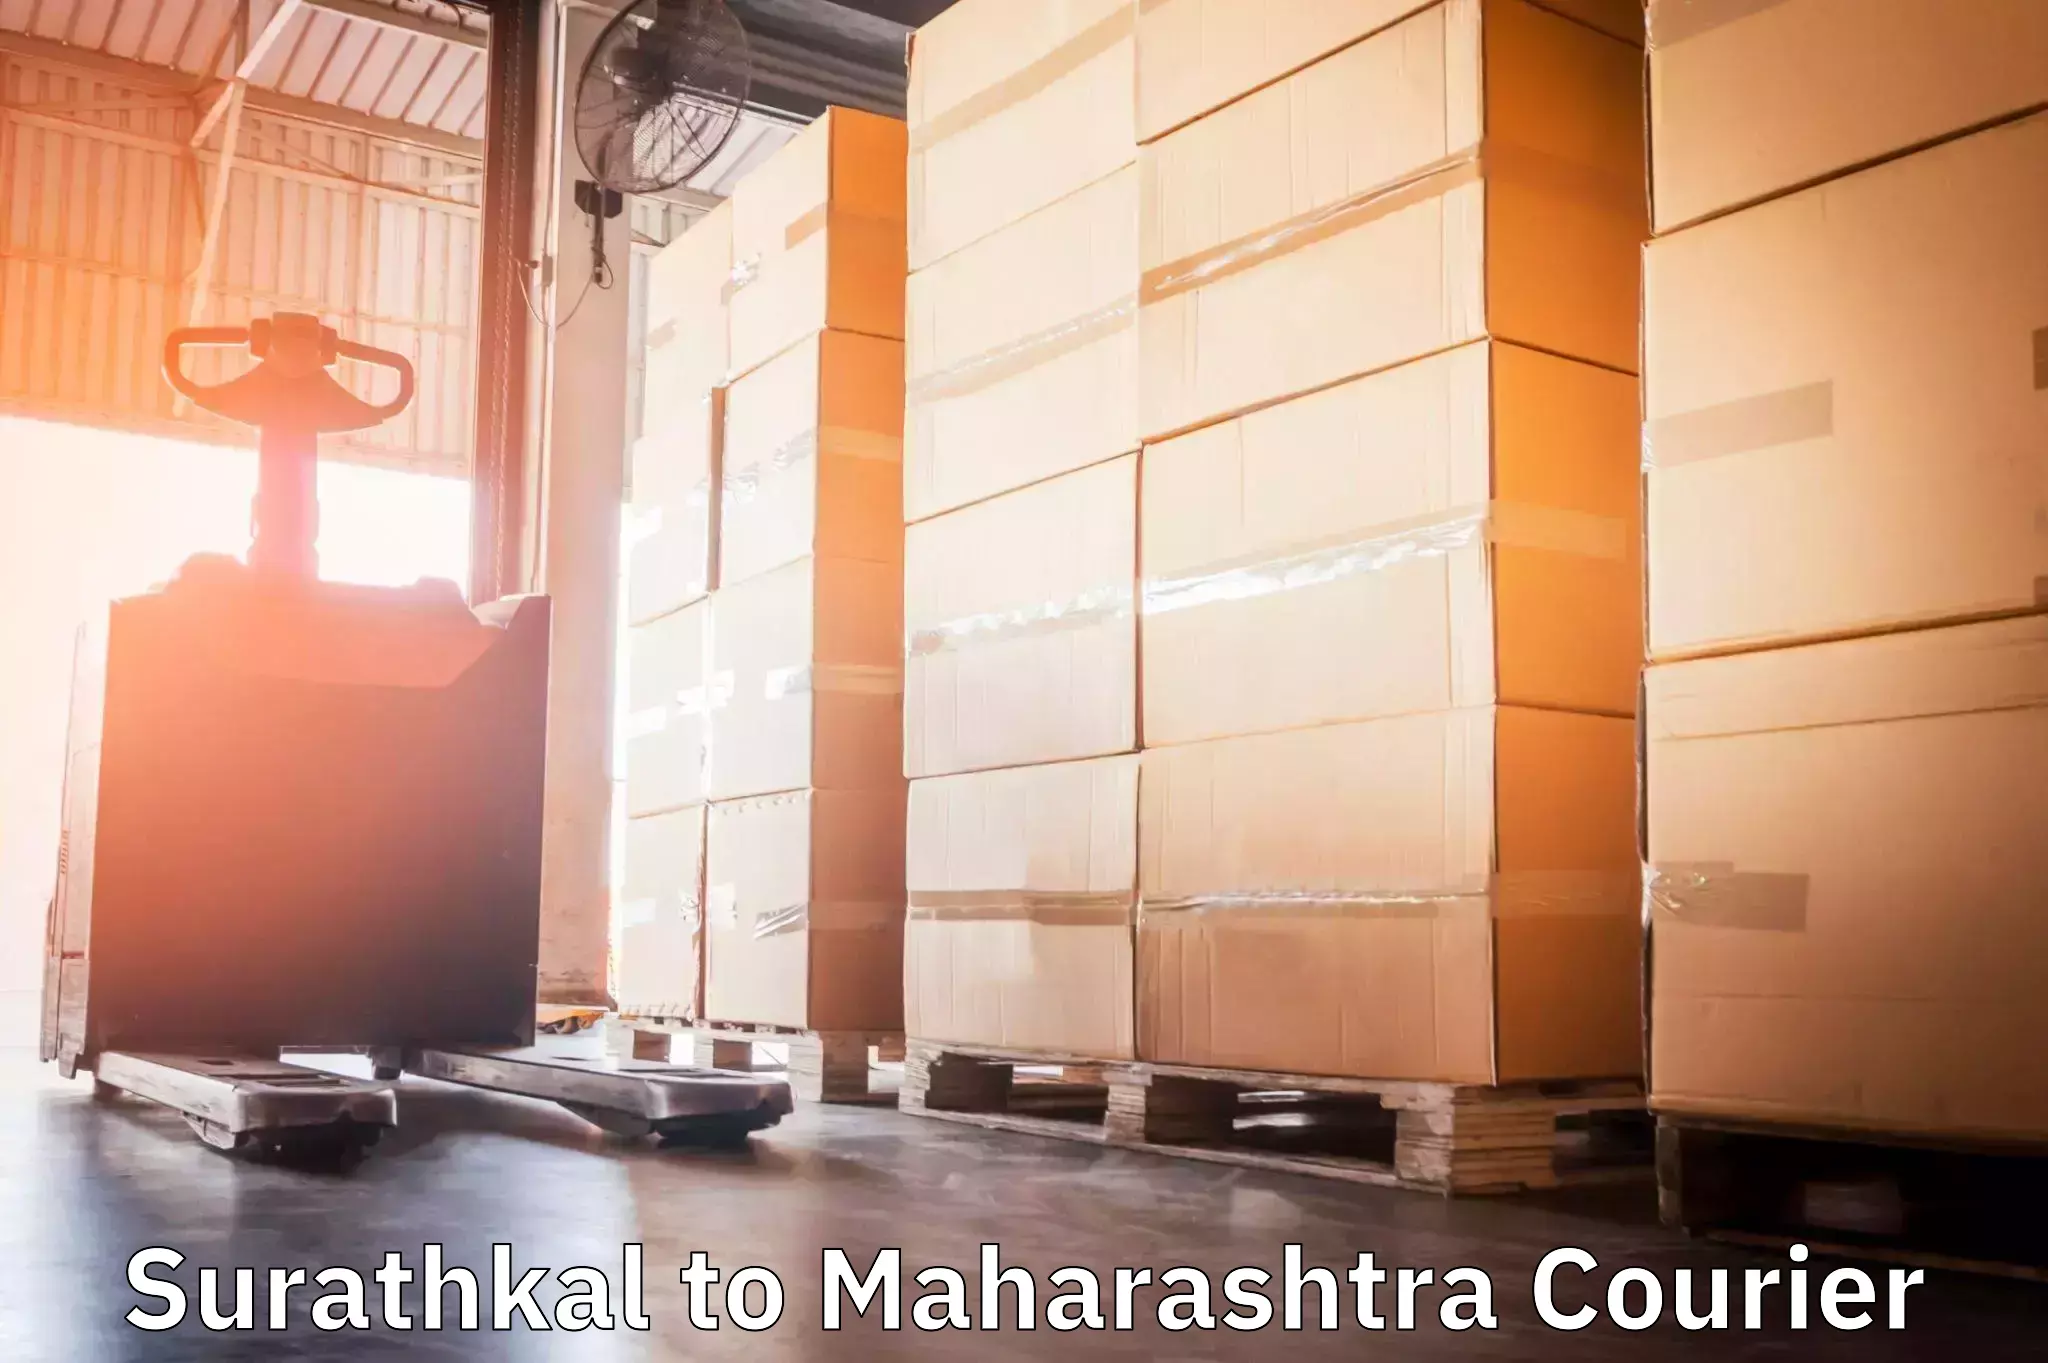 High-capacity parcel service Surathkal to Maharashtra